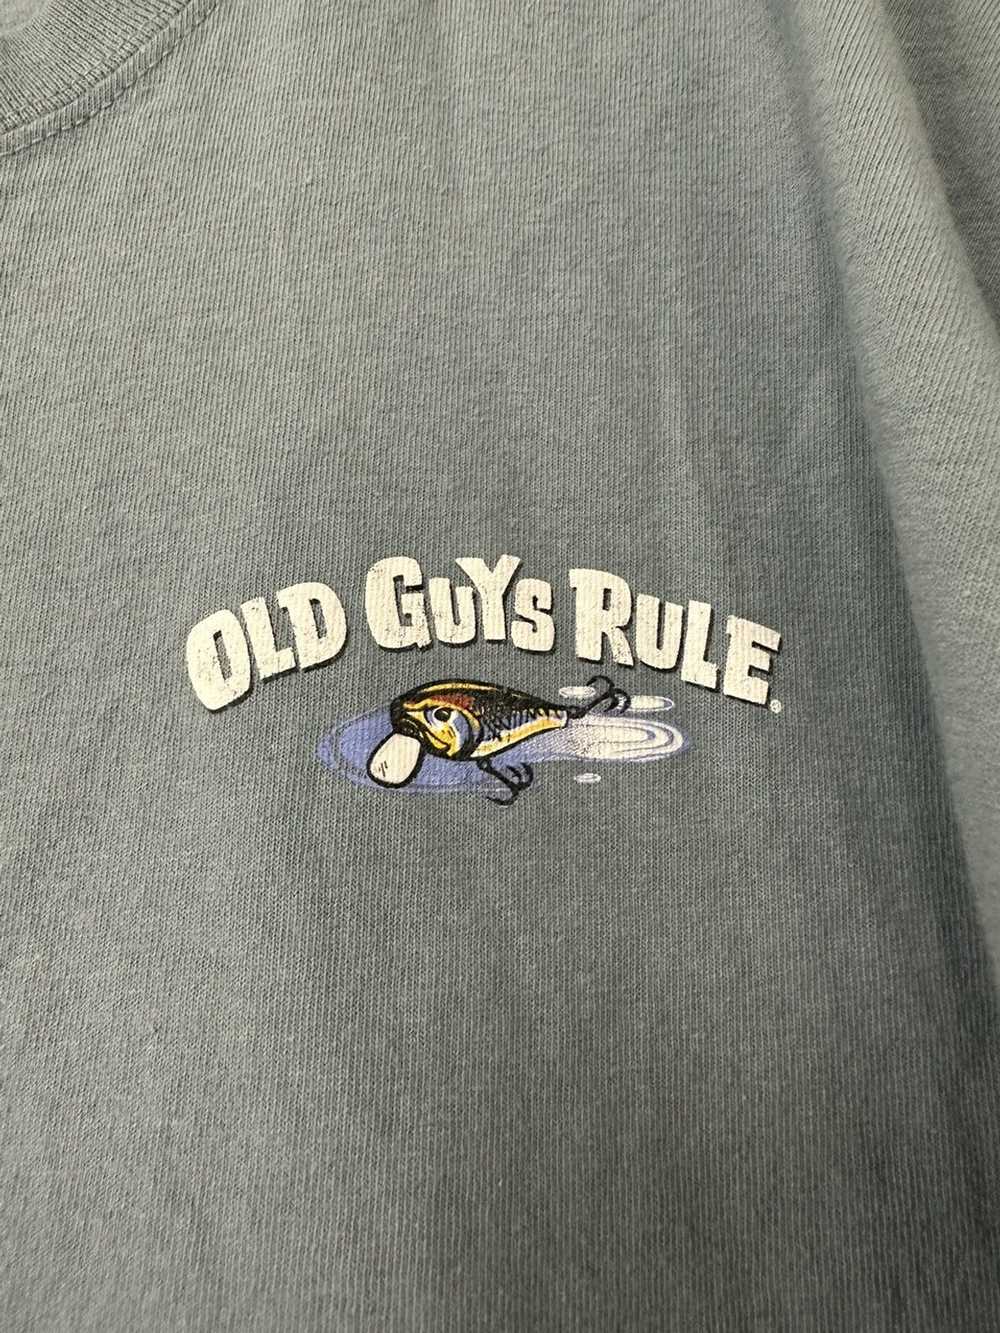 Humor × Streetwear Old Guys Rule 💪🏽 💥 - image 2